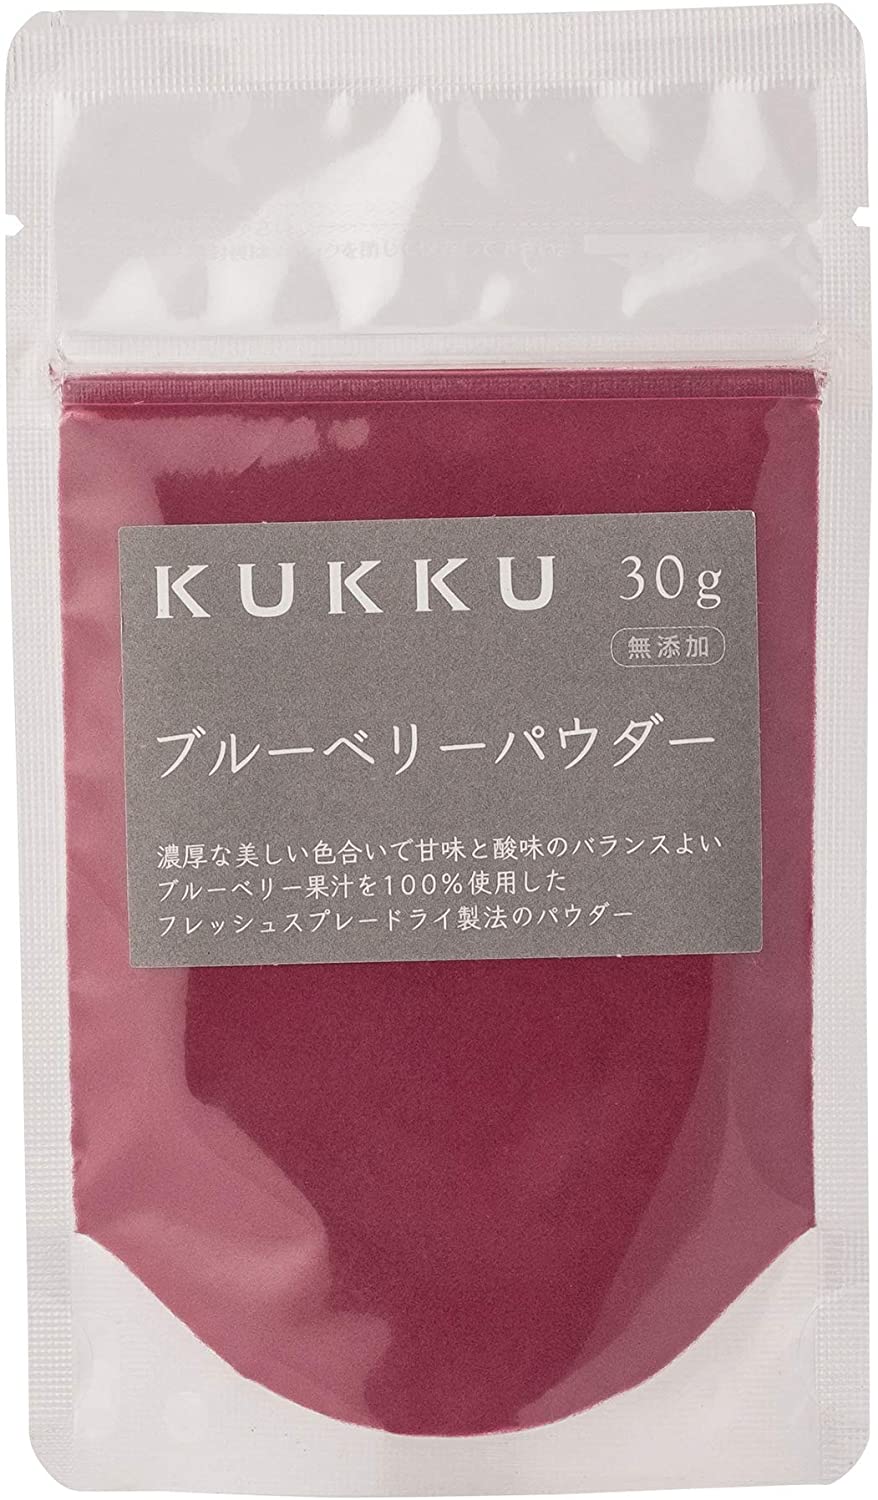 KUKKU Blueberry powder 30g Additive-free fruit powder